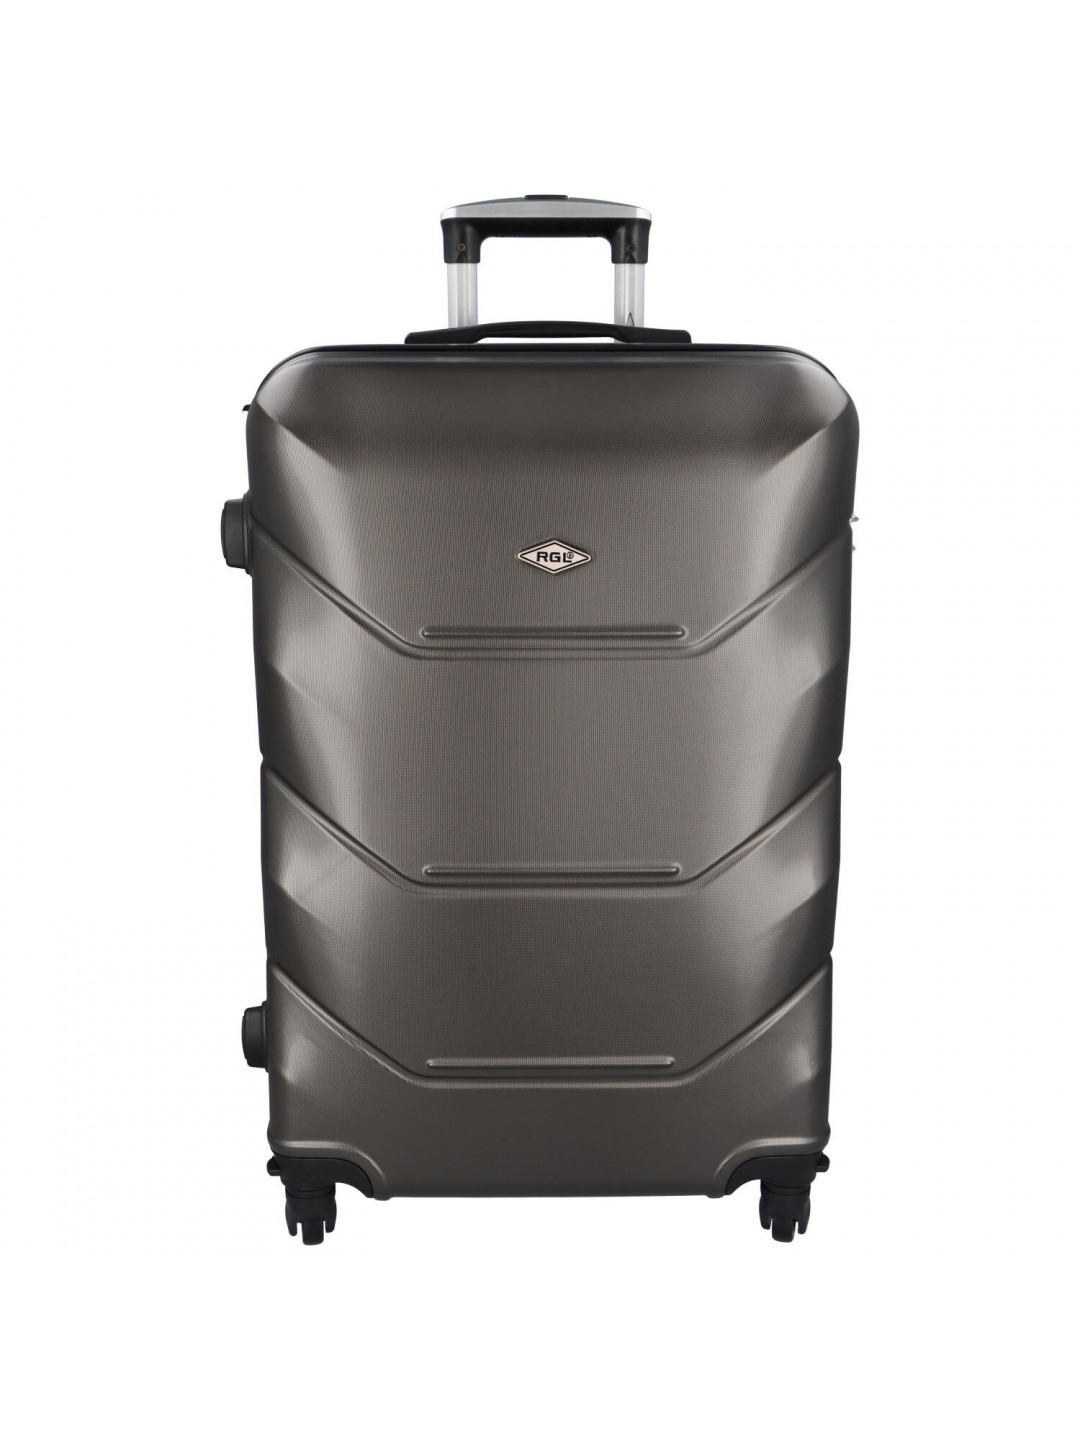 Skořepinový cestovní kufr antracitově šedý – RGL Hairon S